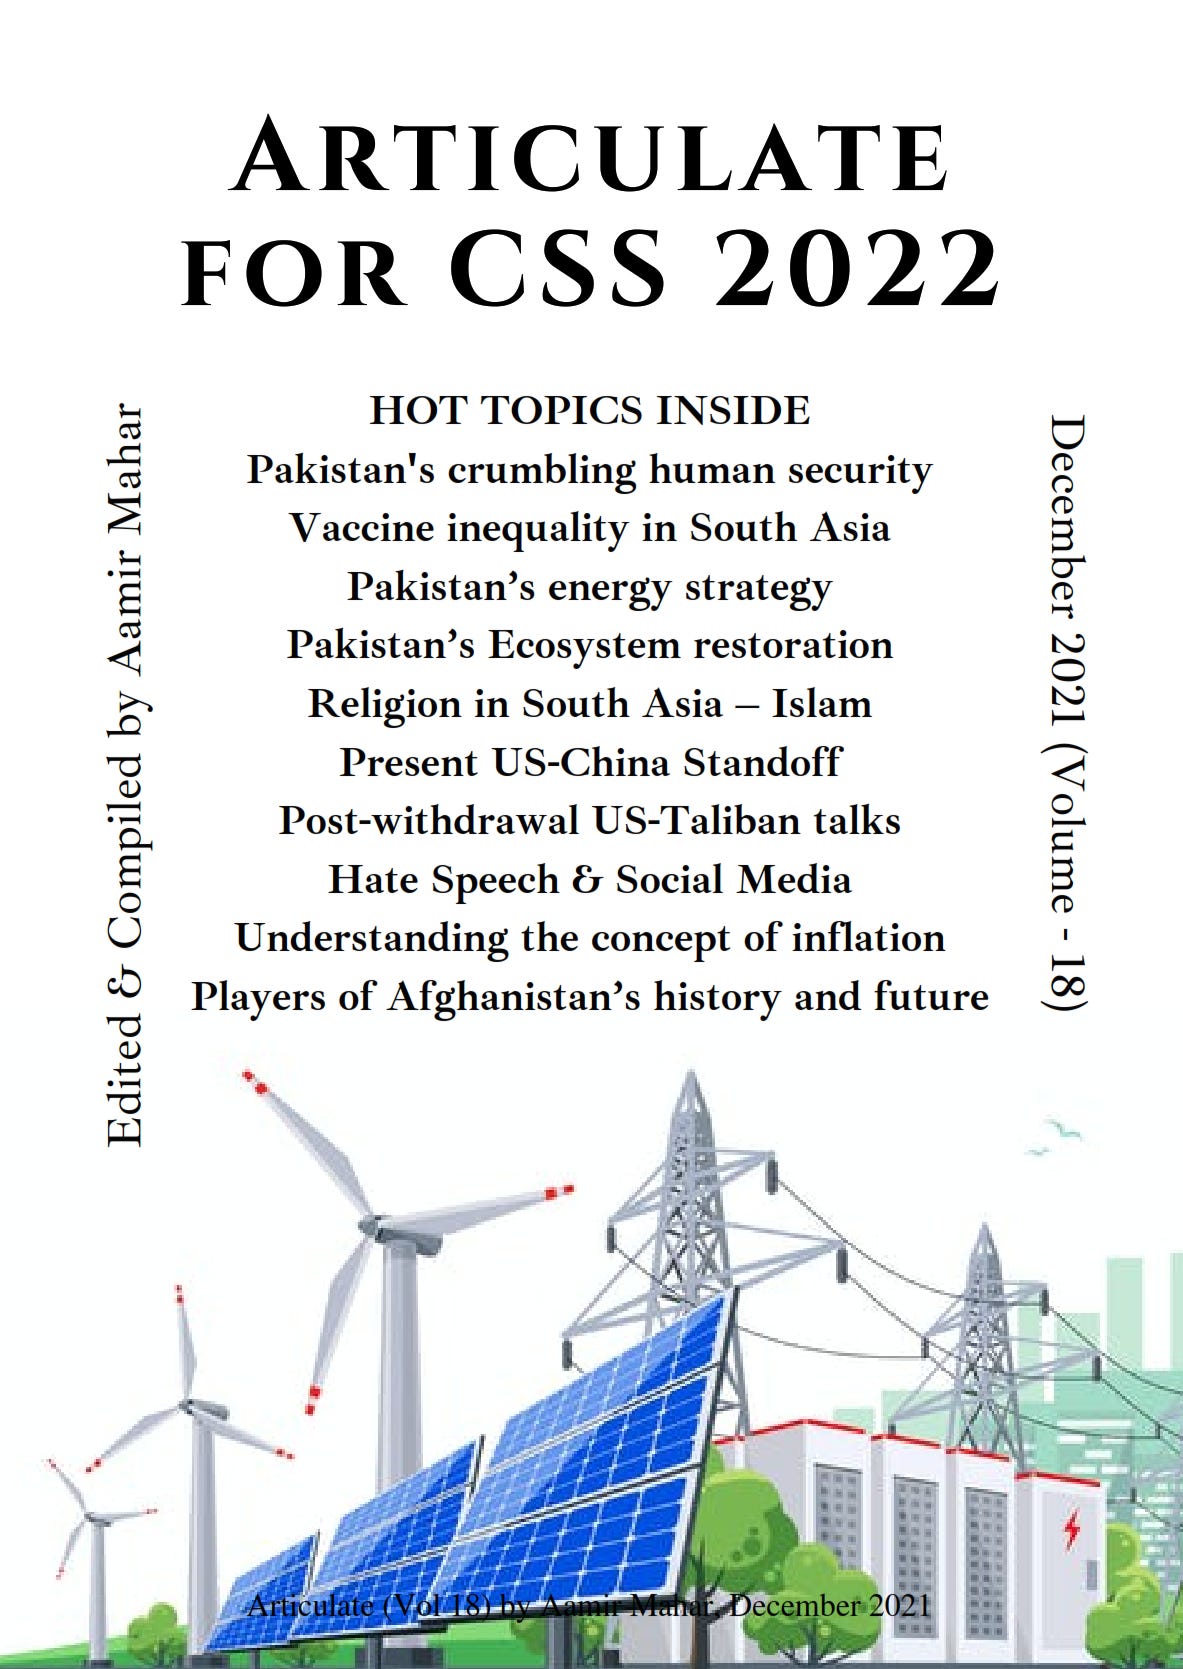 CSS 2022 Articulate – 18